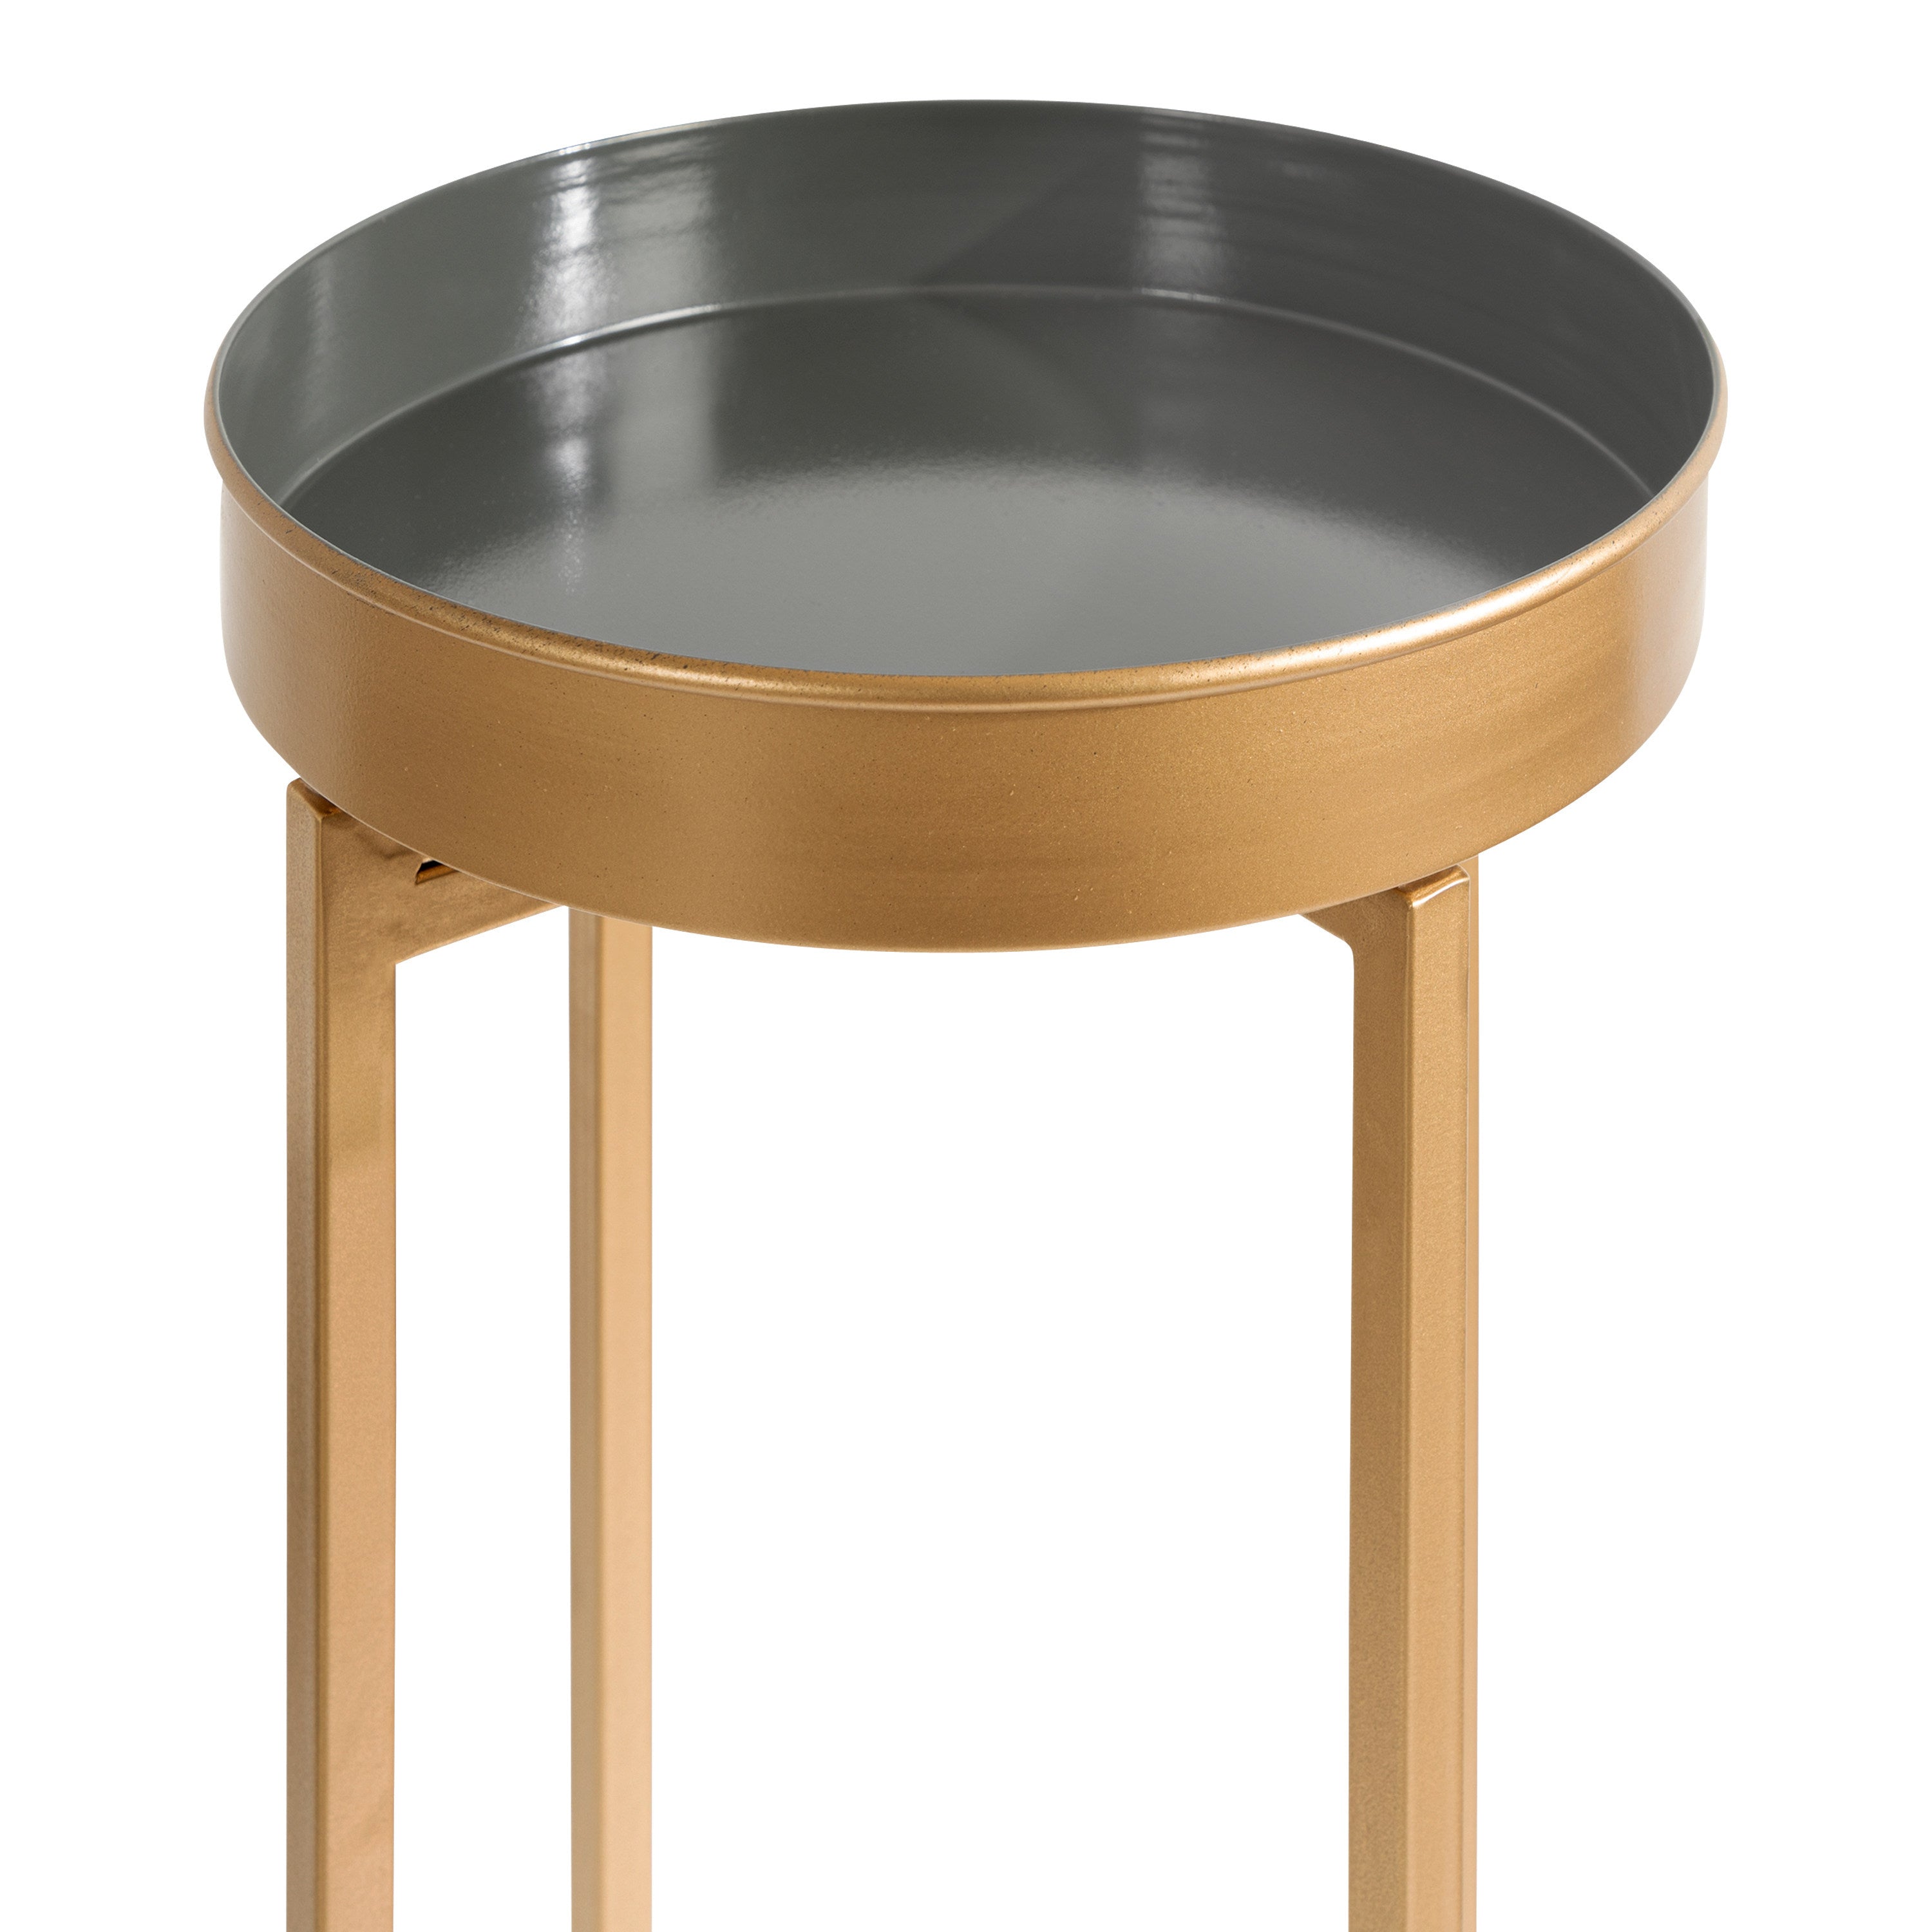 Celia Round Metal Foldable Tray Table Set